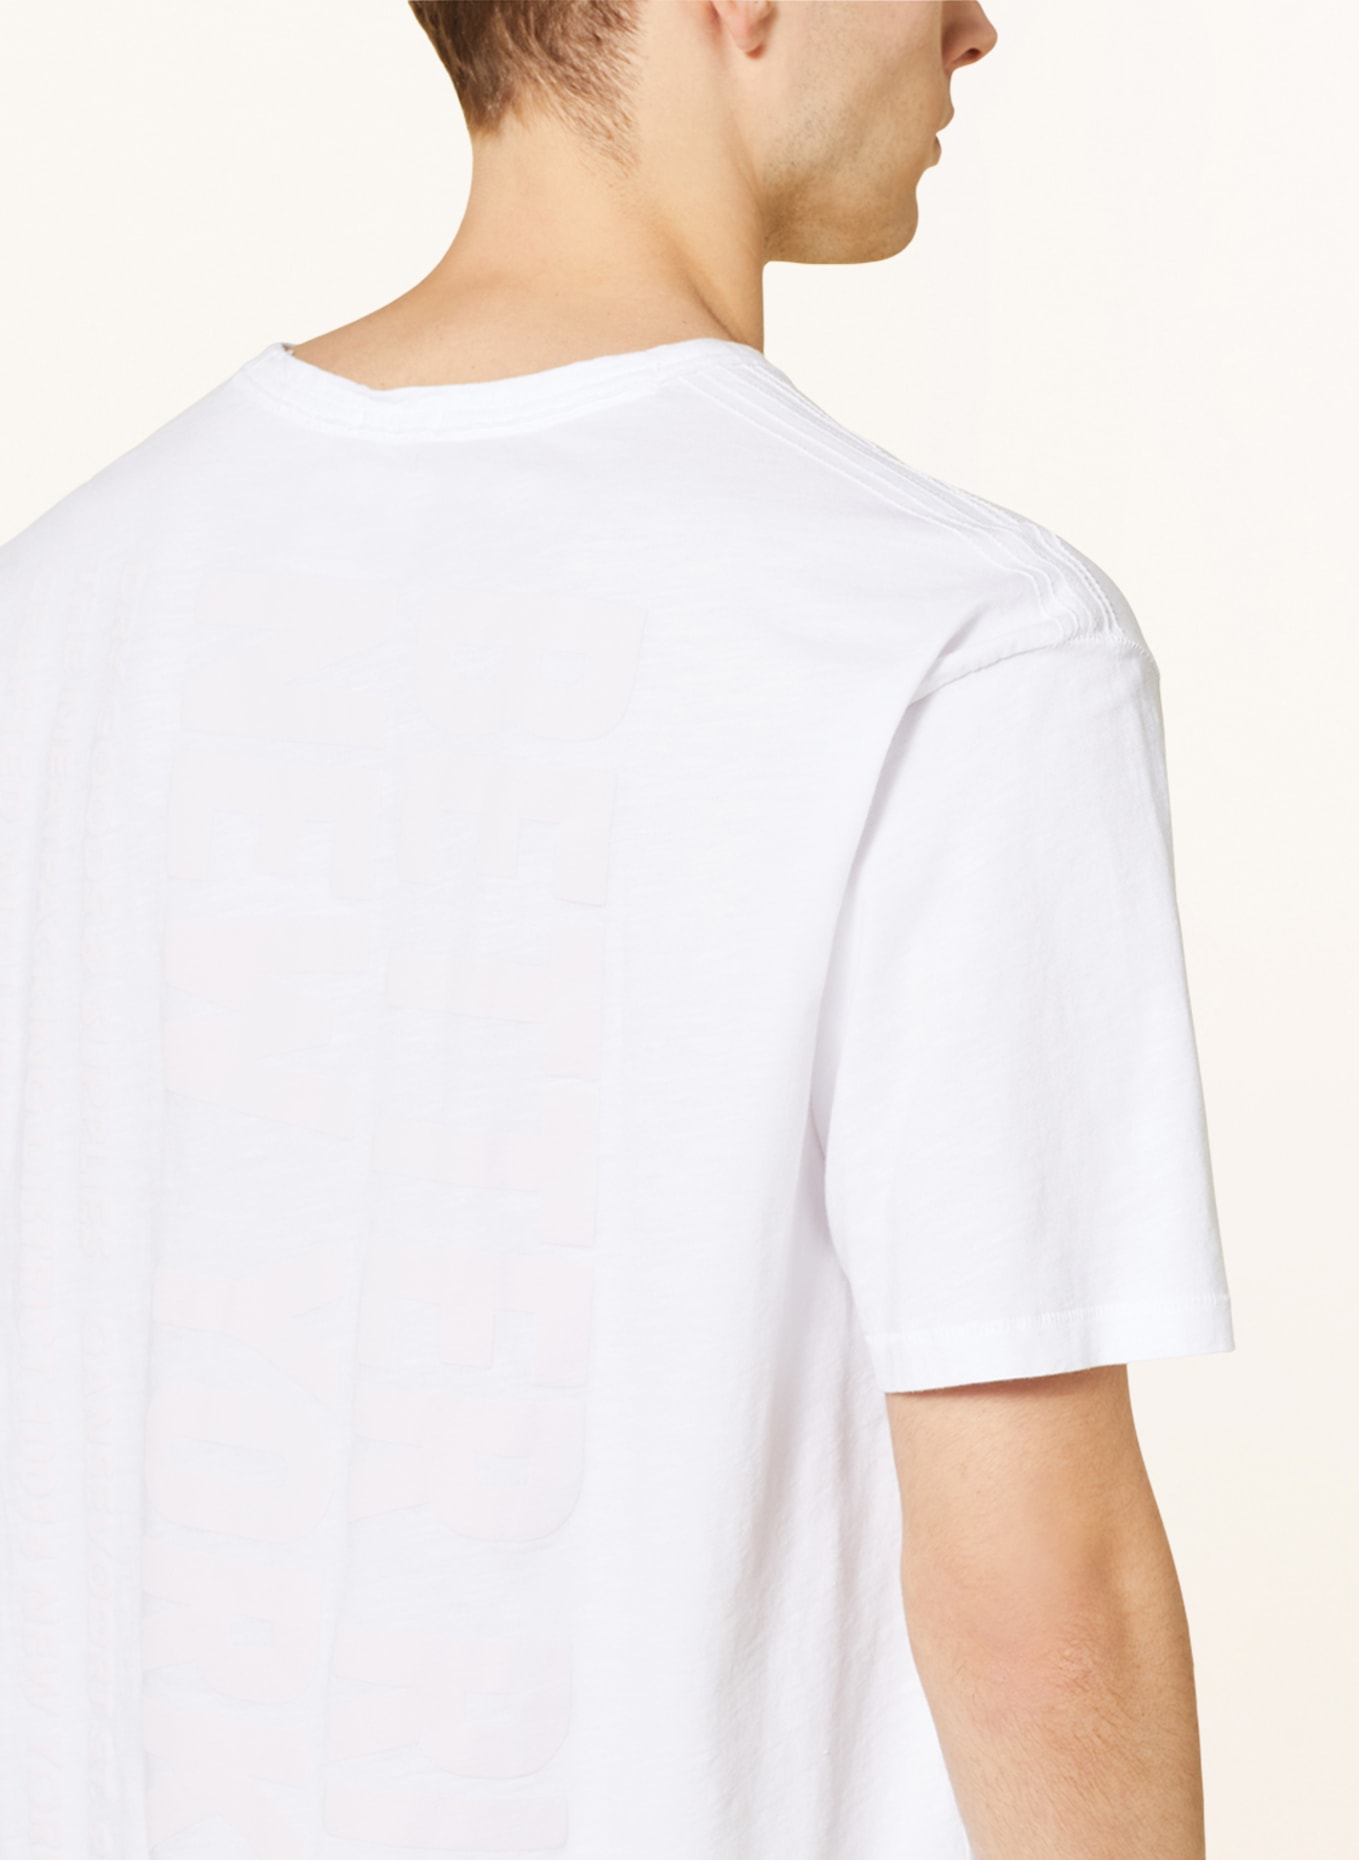 BETTER RICH T-shirt RON, Color: WHITE (Image 4)